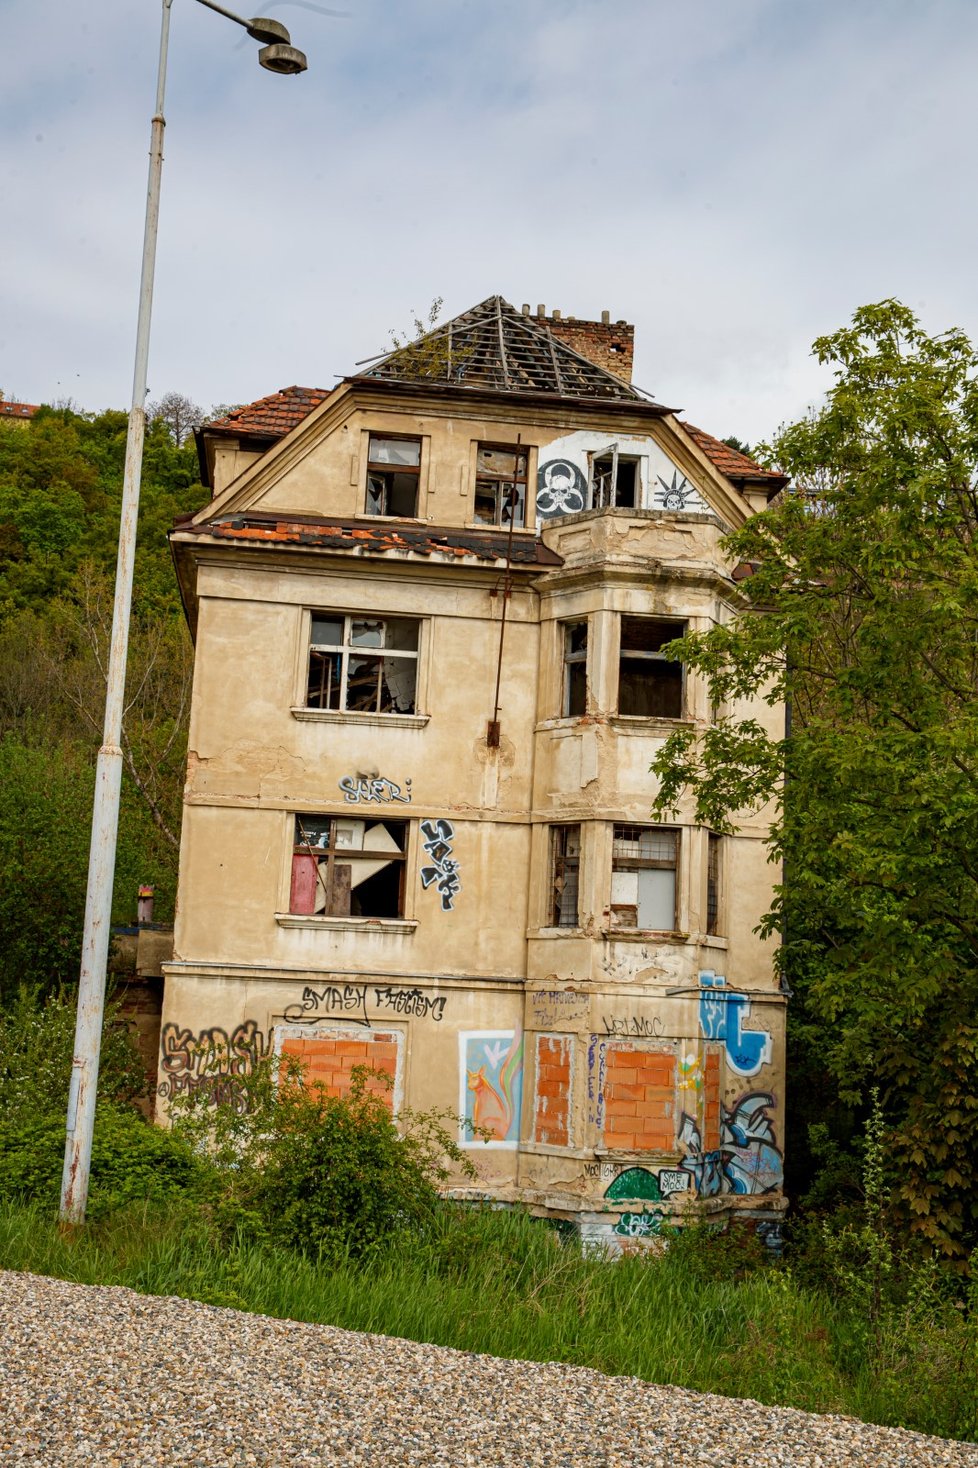 Před dvěma lety vilu Milada koupila Karlova univerzita. Objekt je stále v zuboženém stavu (3. května 2023)